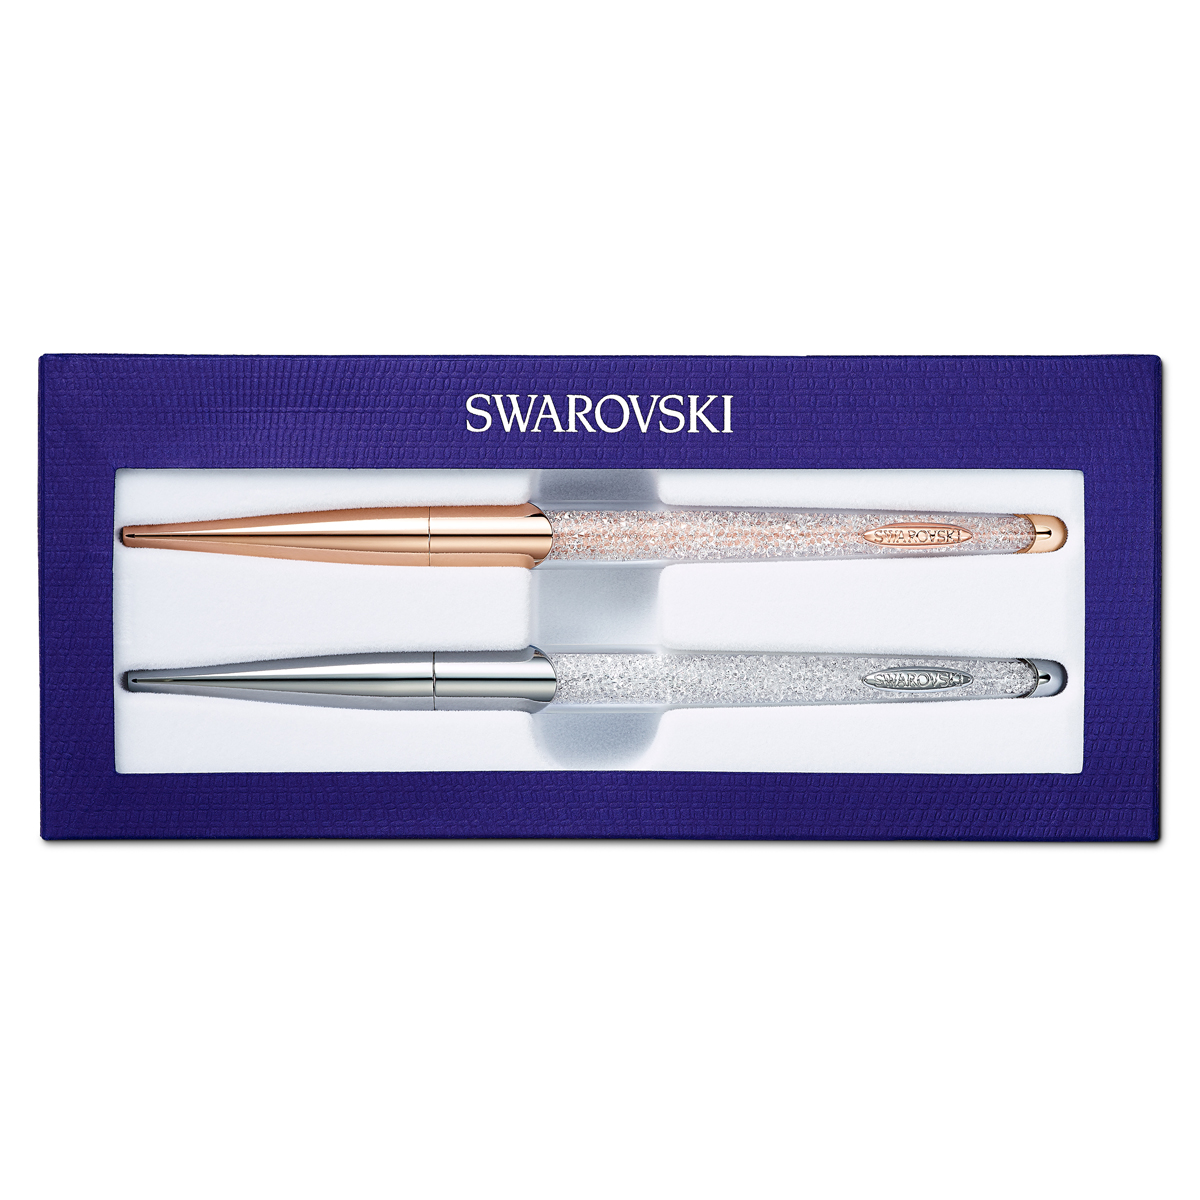 Swarovski Crystalline Nova Ballpoint Pen Set, White, Mixed Metal Finish